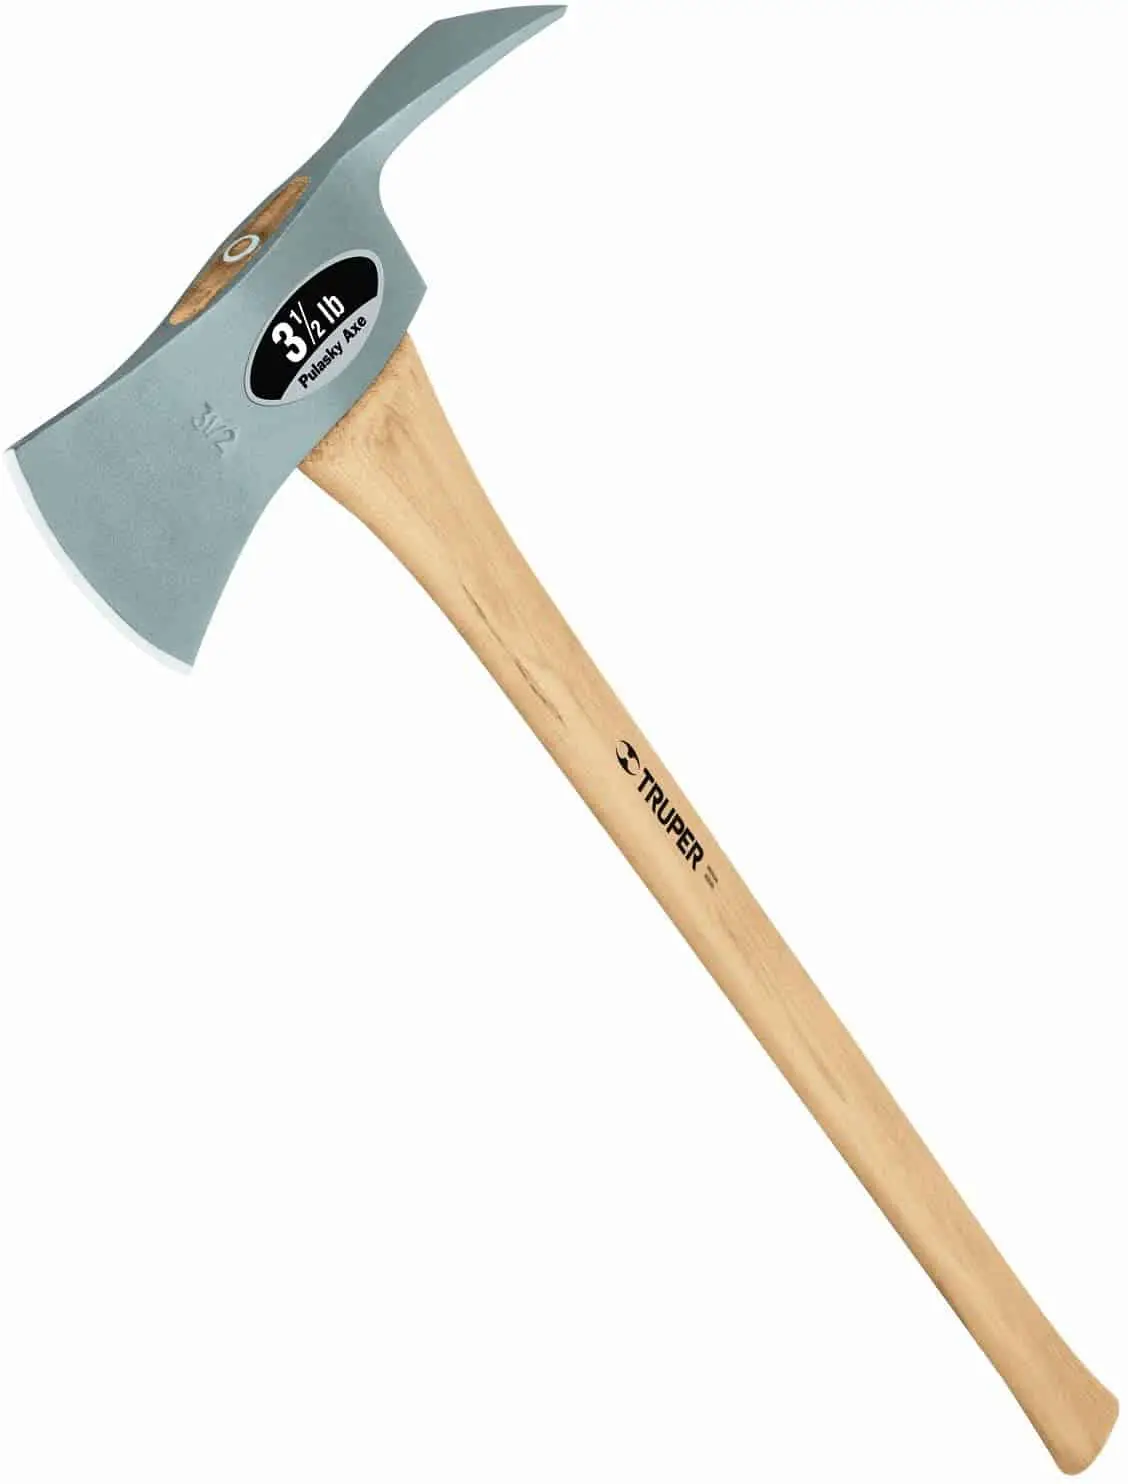 Best lightweight Pulaski axe- Truper 30529 35-Inch